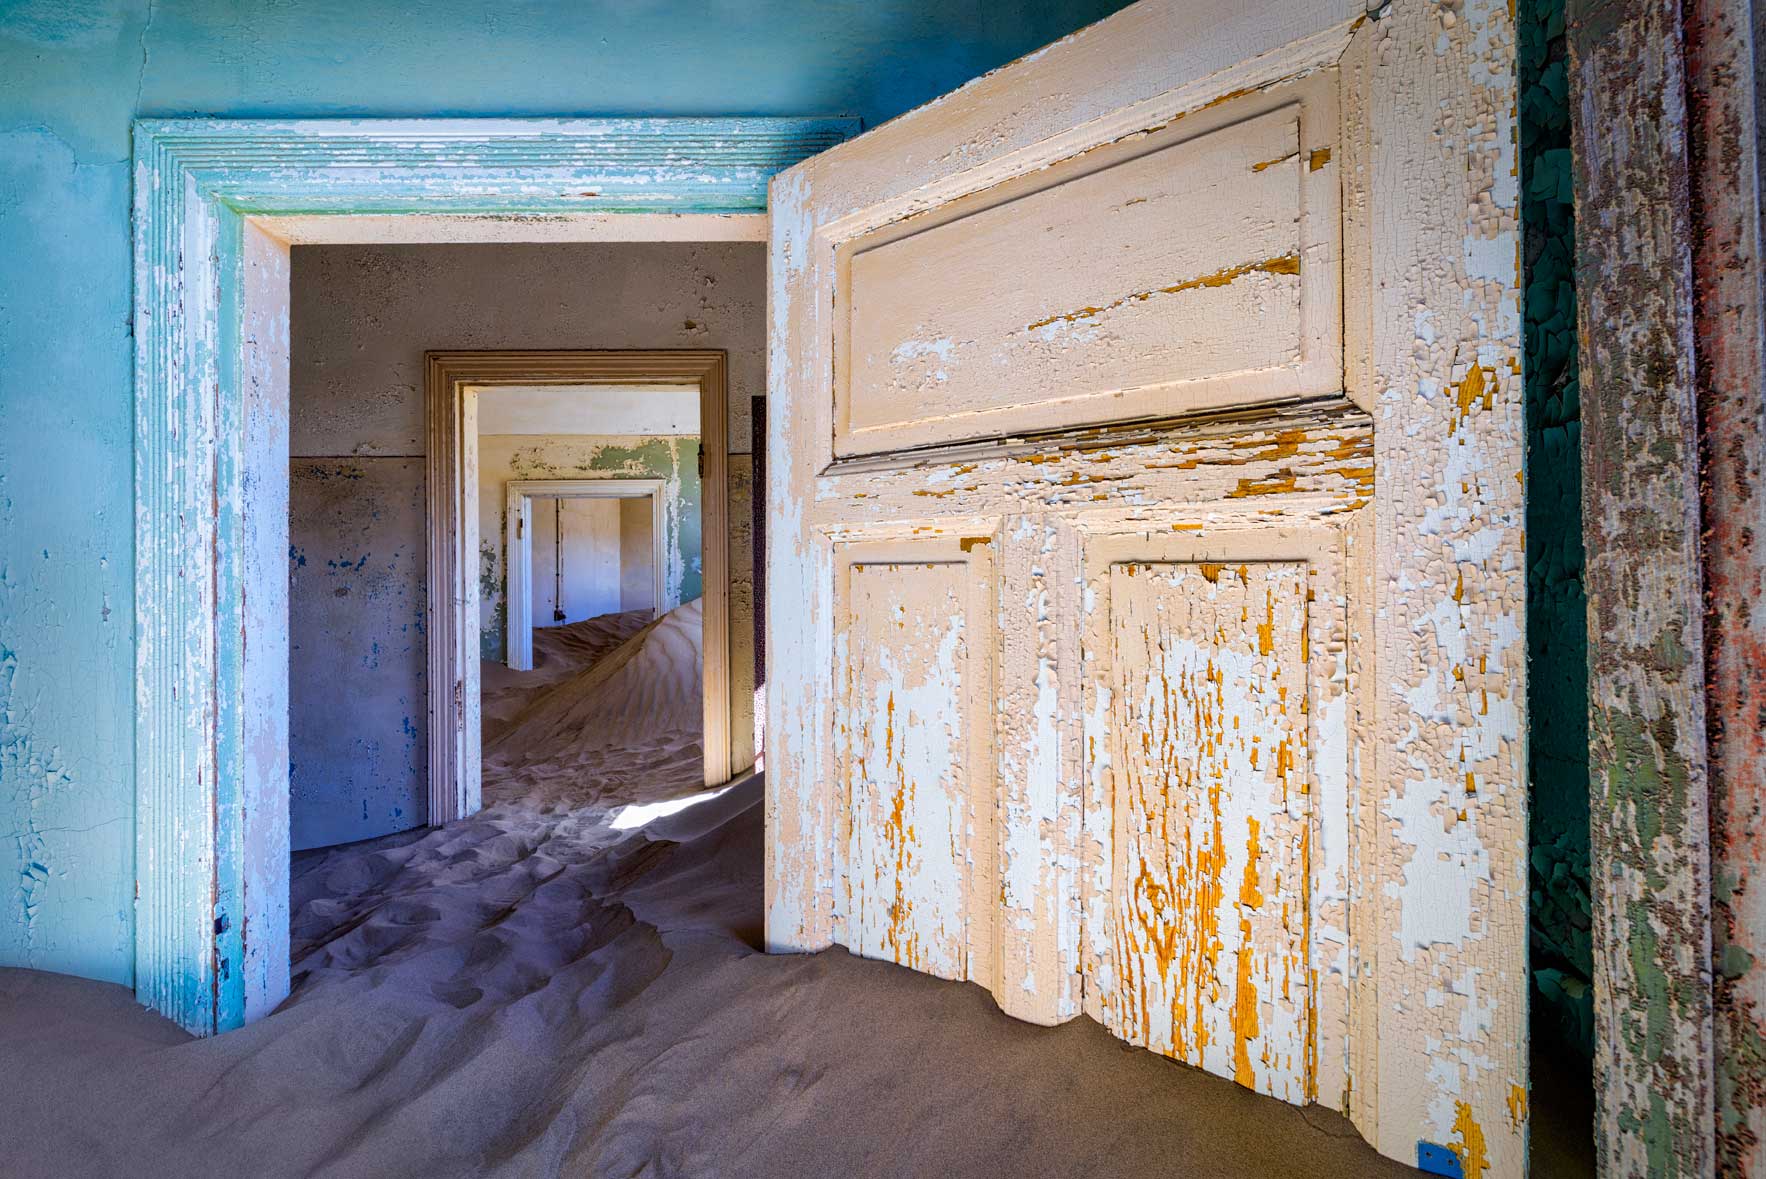 Sand filled rooms seen through a series of doorways in Kolmanskop, Namibia